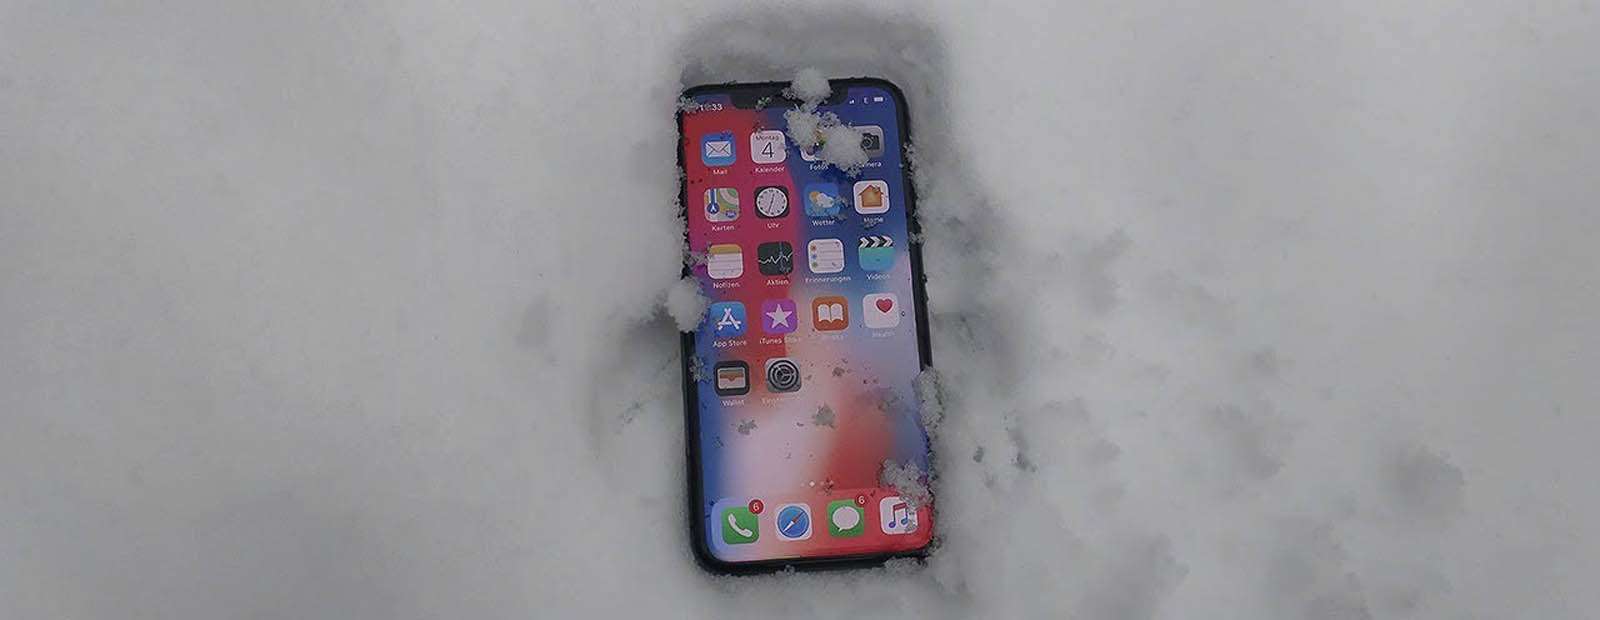 Почему телефоны садятся на морозе?